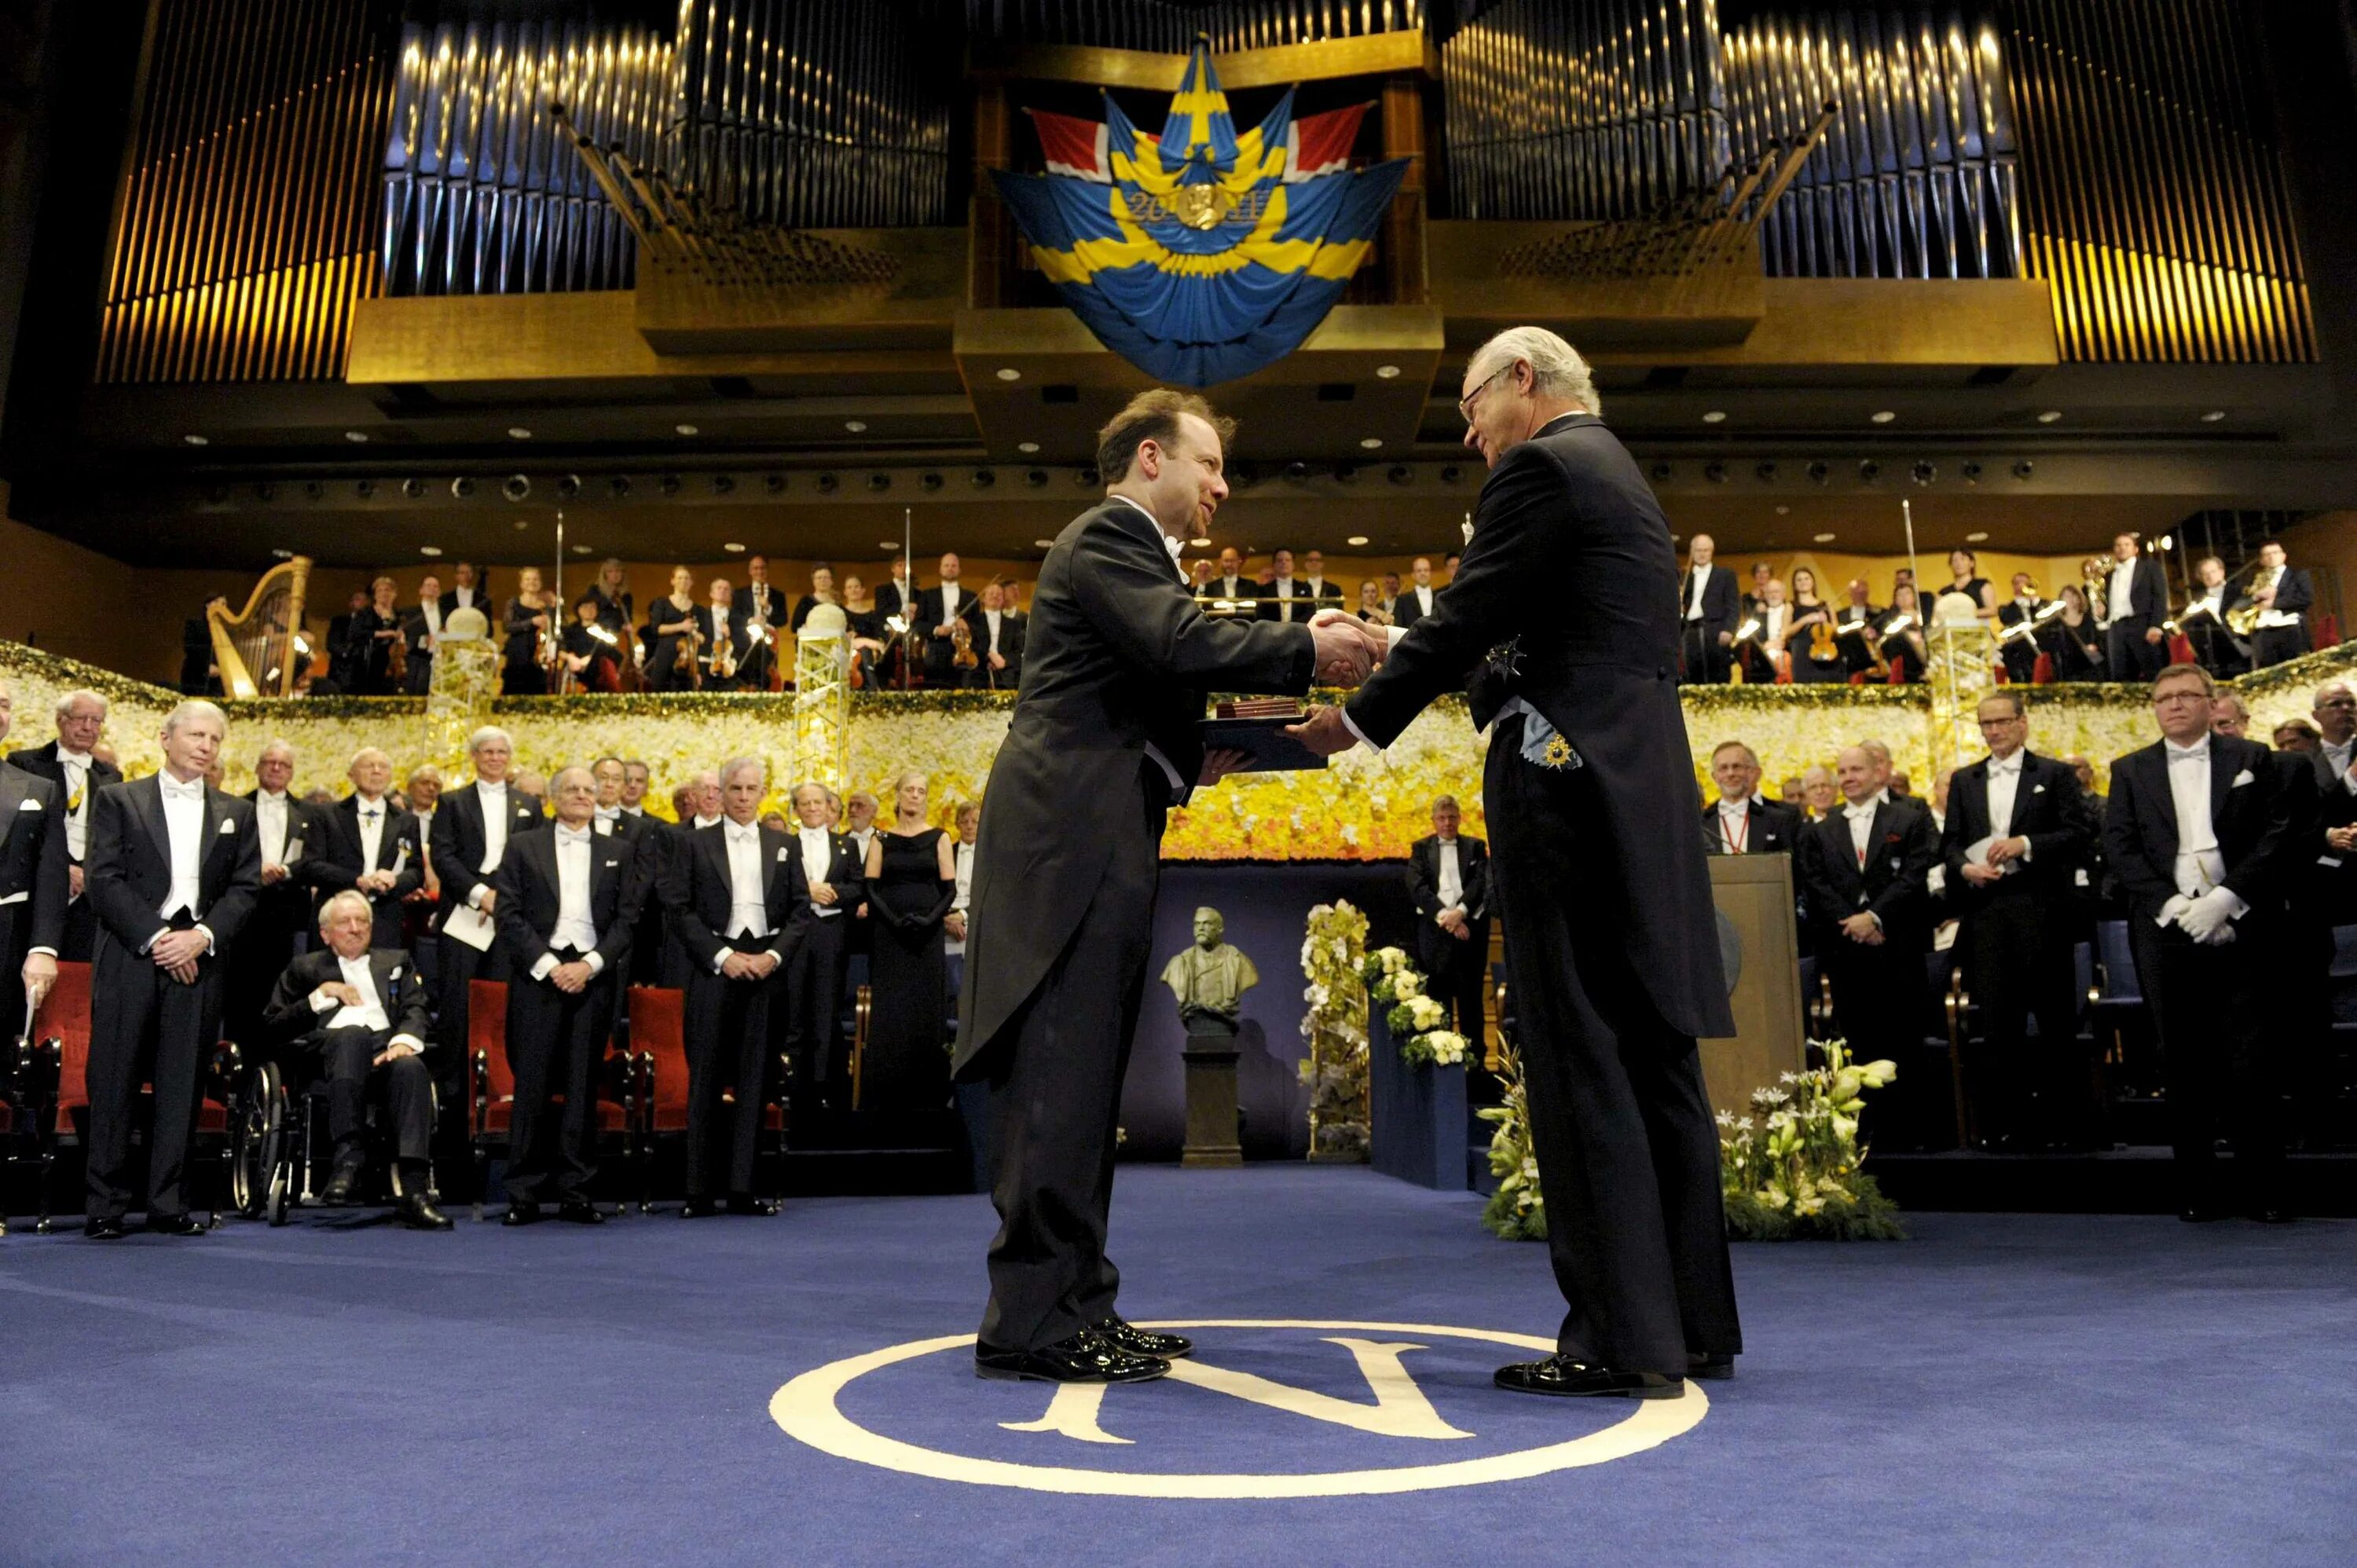 День нобелевской премии. Награждение Нобелевской премией. Церемония вручения Нобелевской премии в Швеции. Нобелевский день — церемония вручения Нобелевской премии.